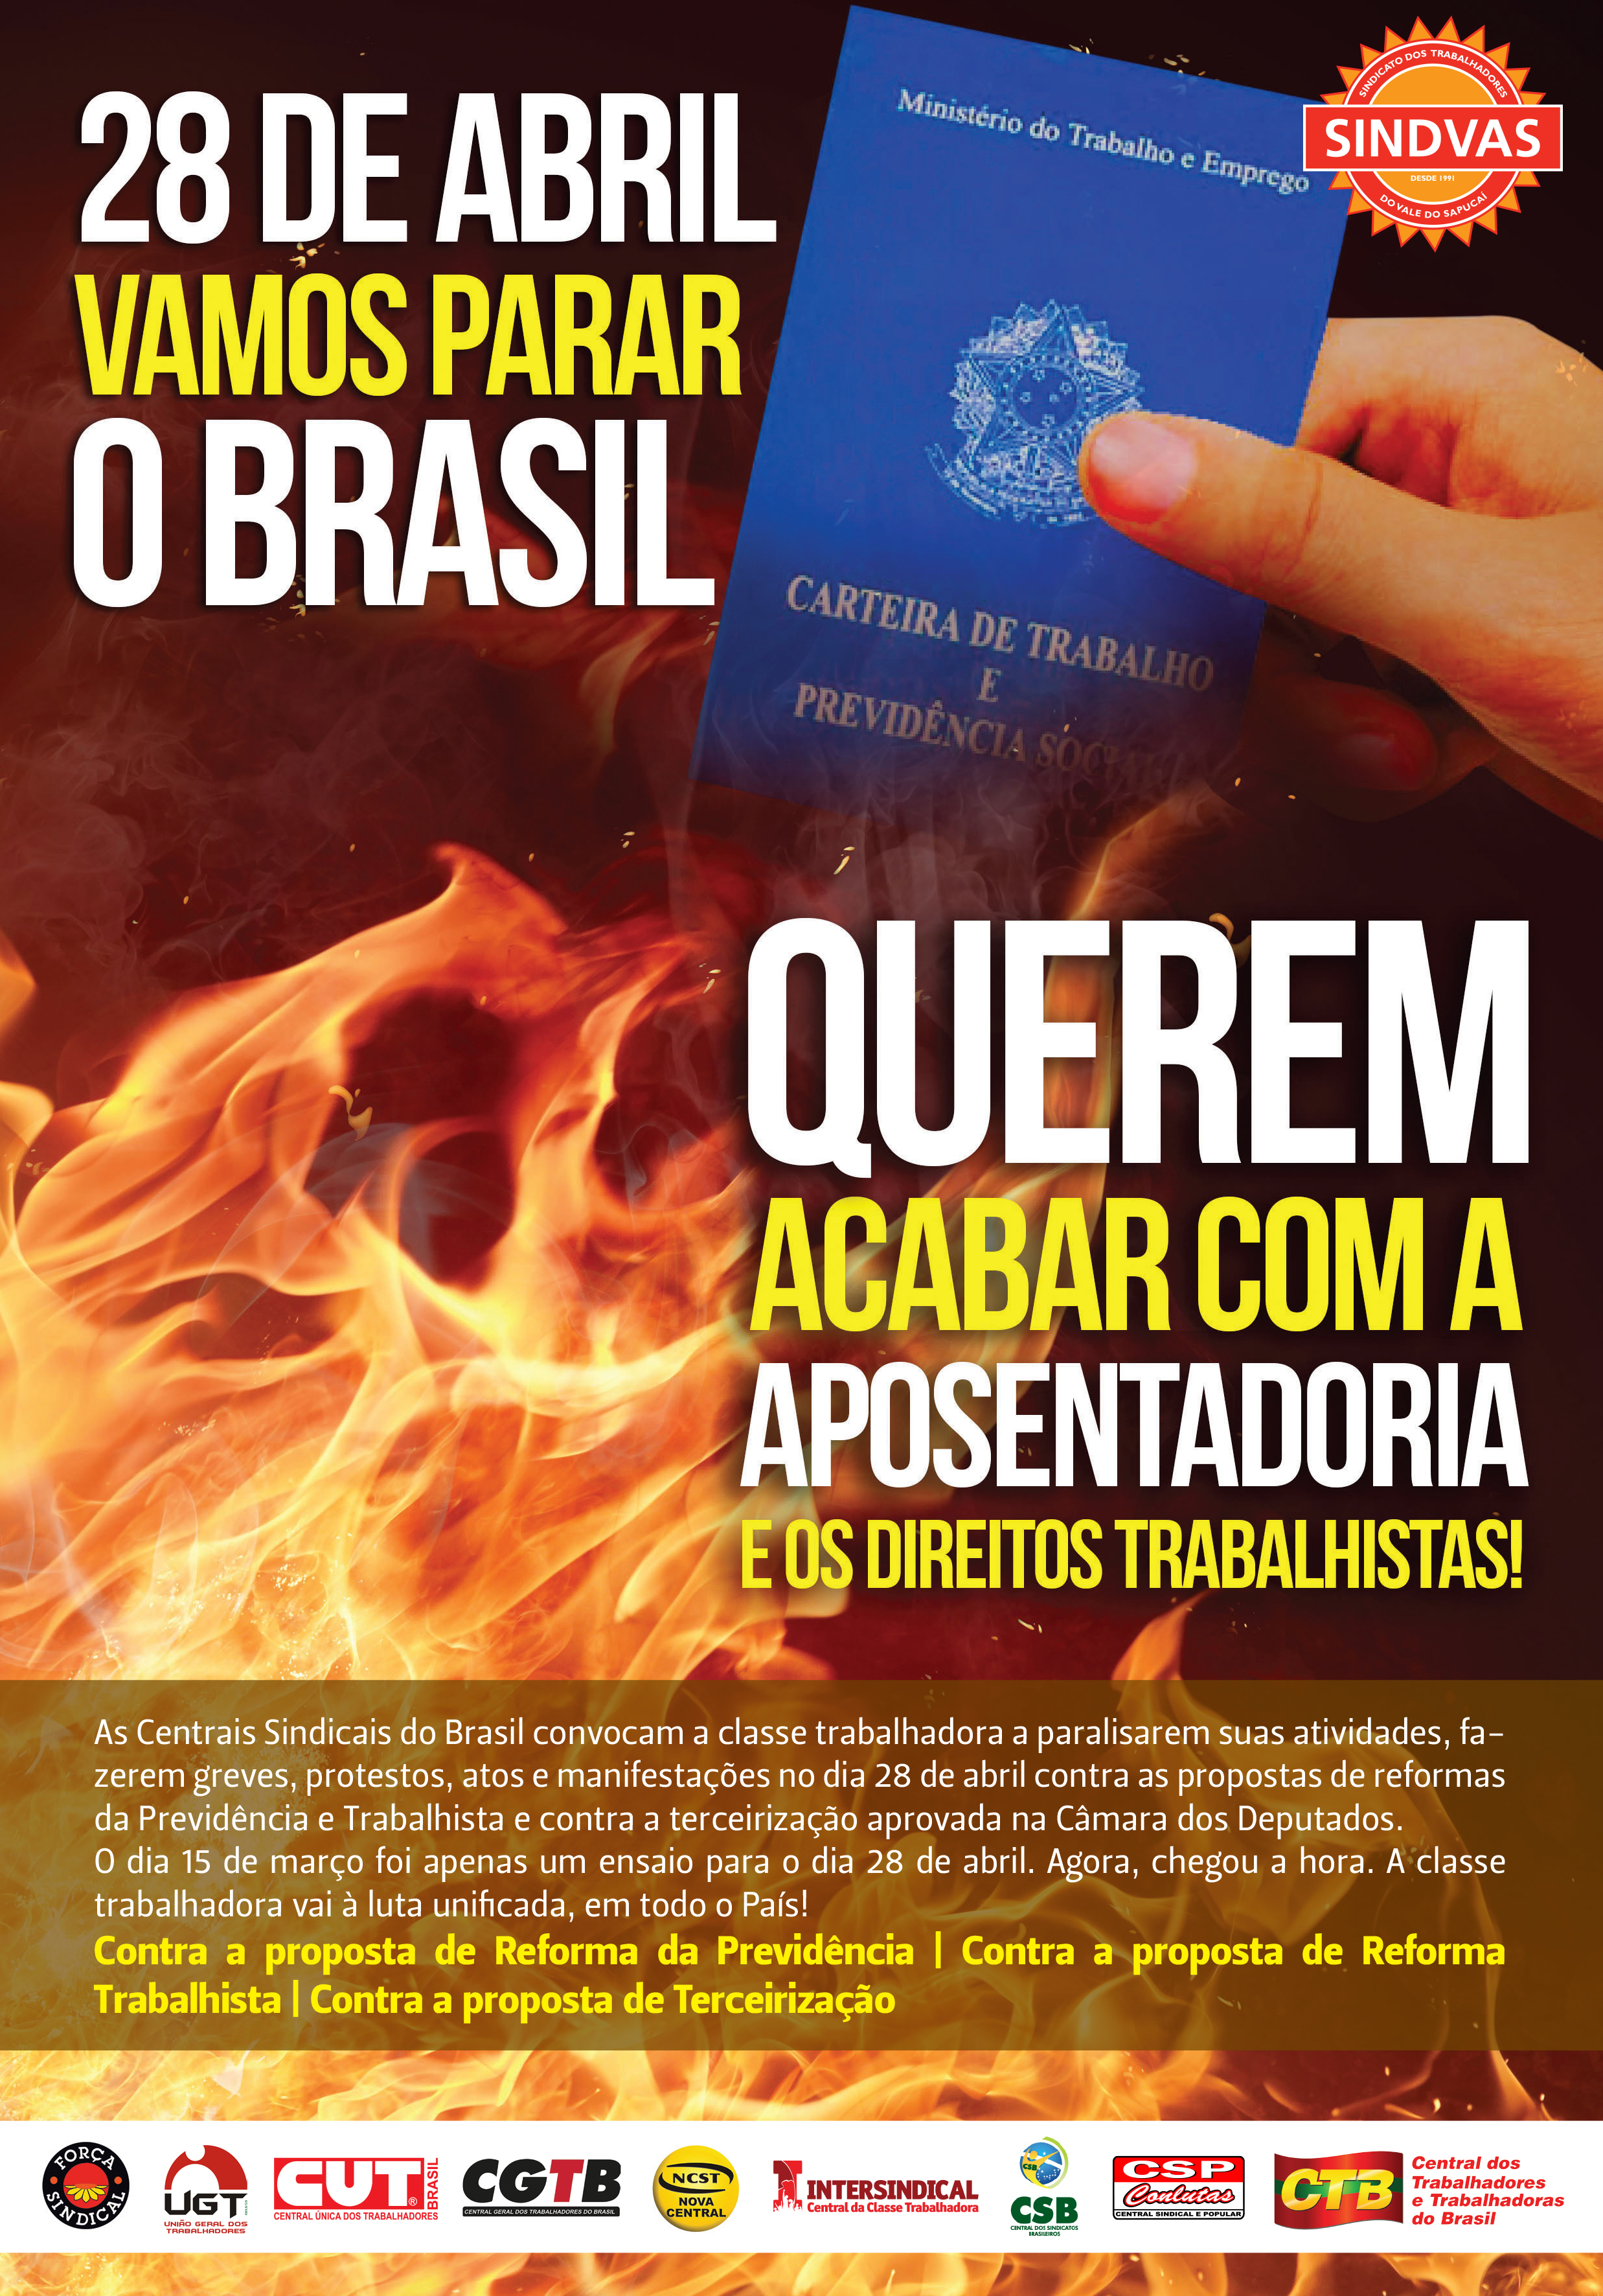 JPG1 28 de Abril vamos parar o Brasil